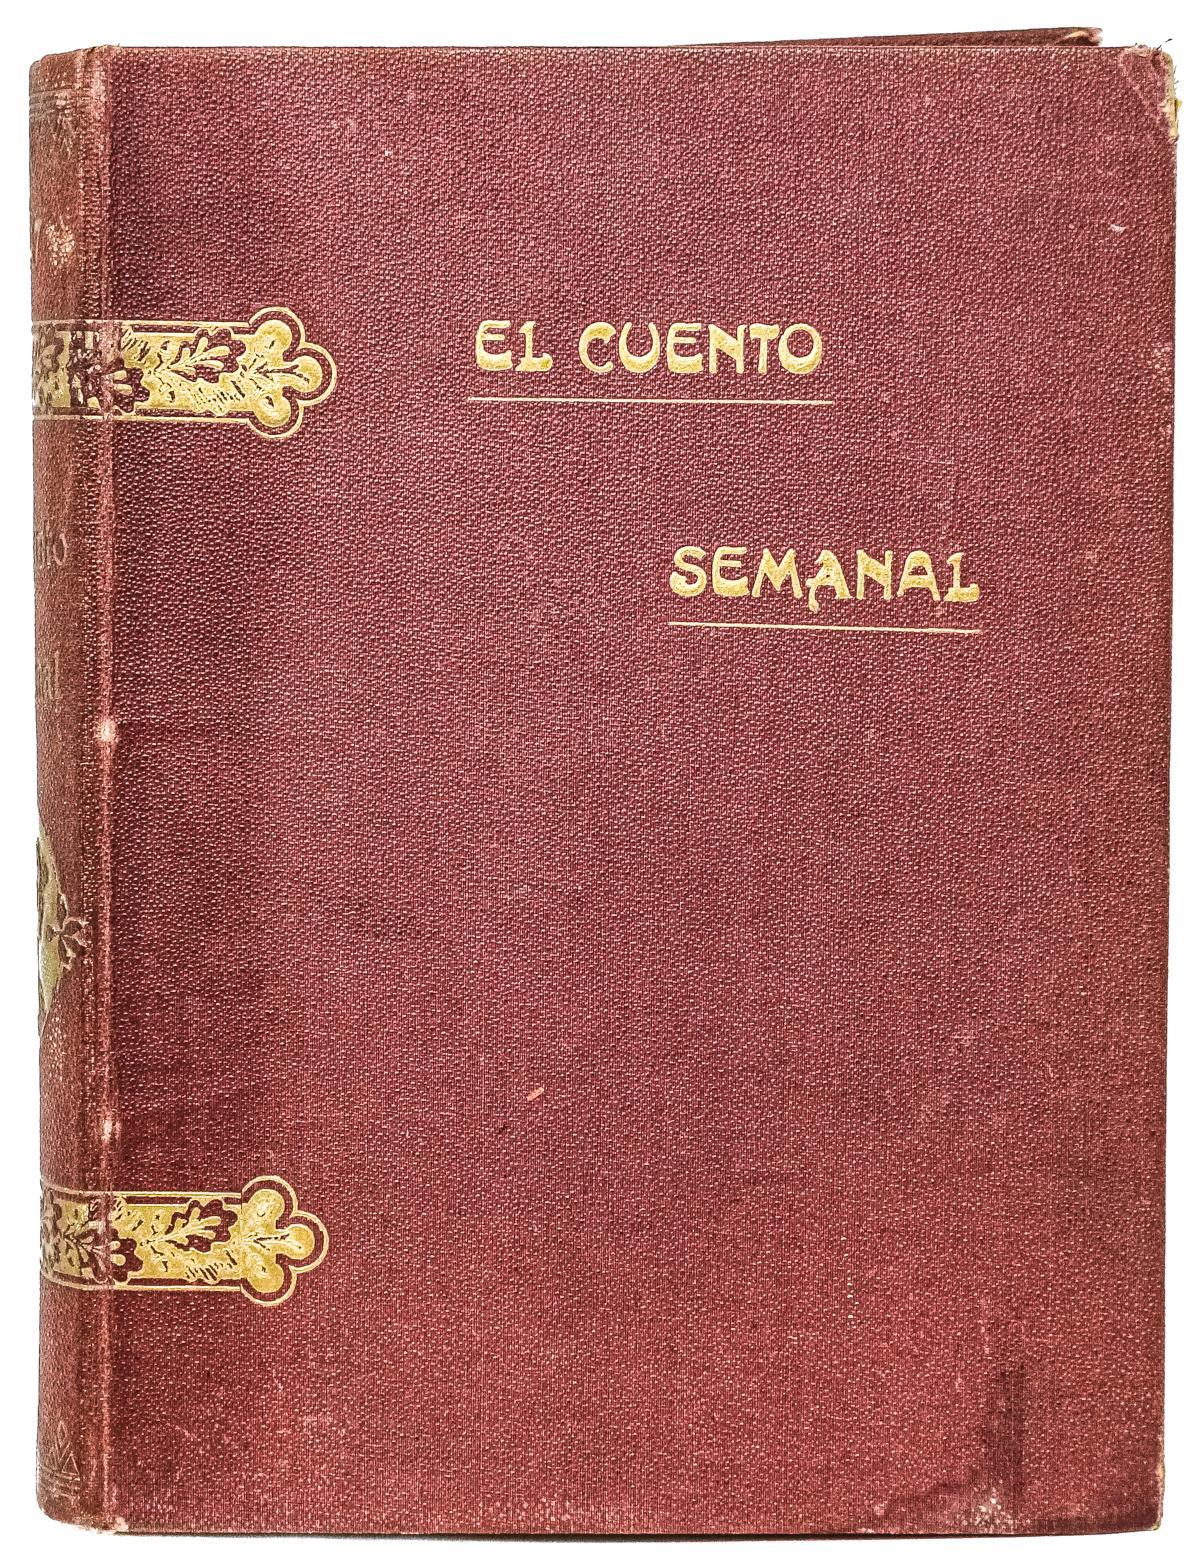 "EL CUENTO SEMANAL"